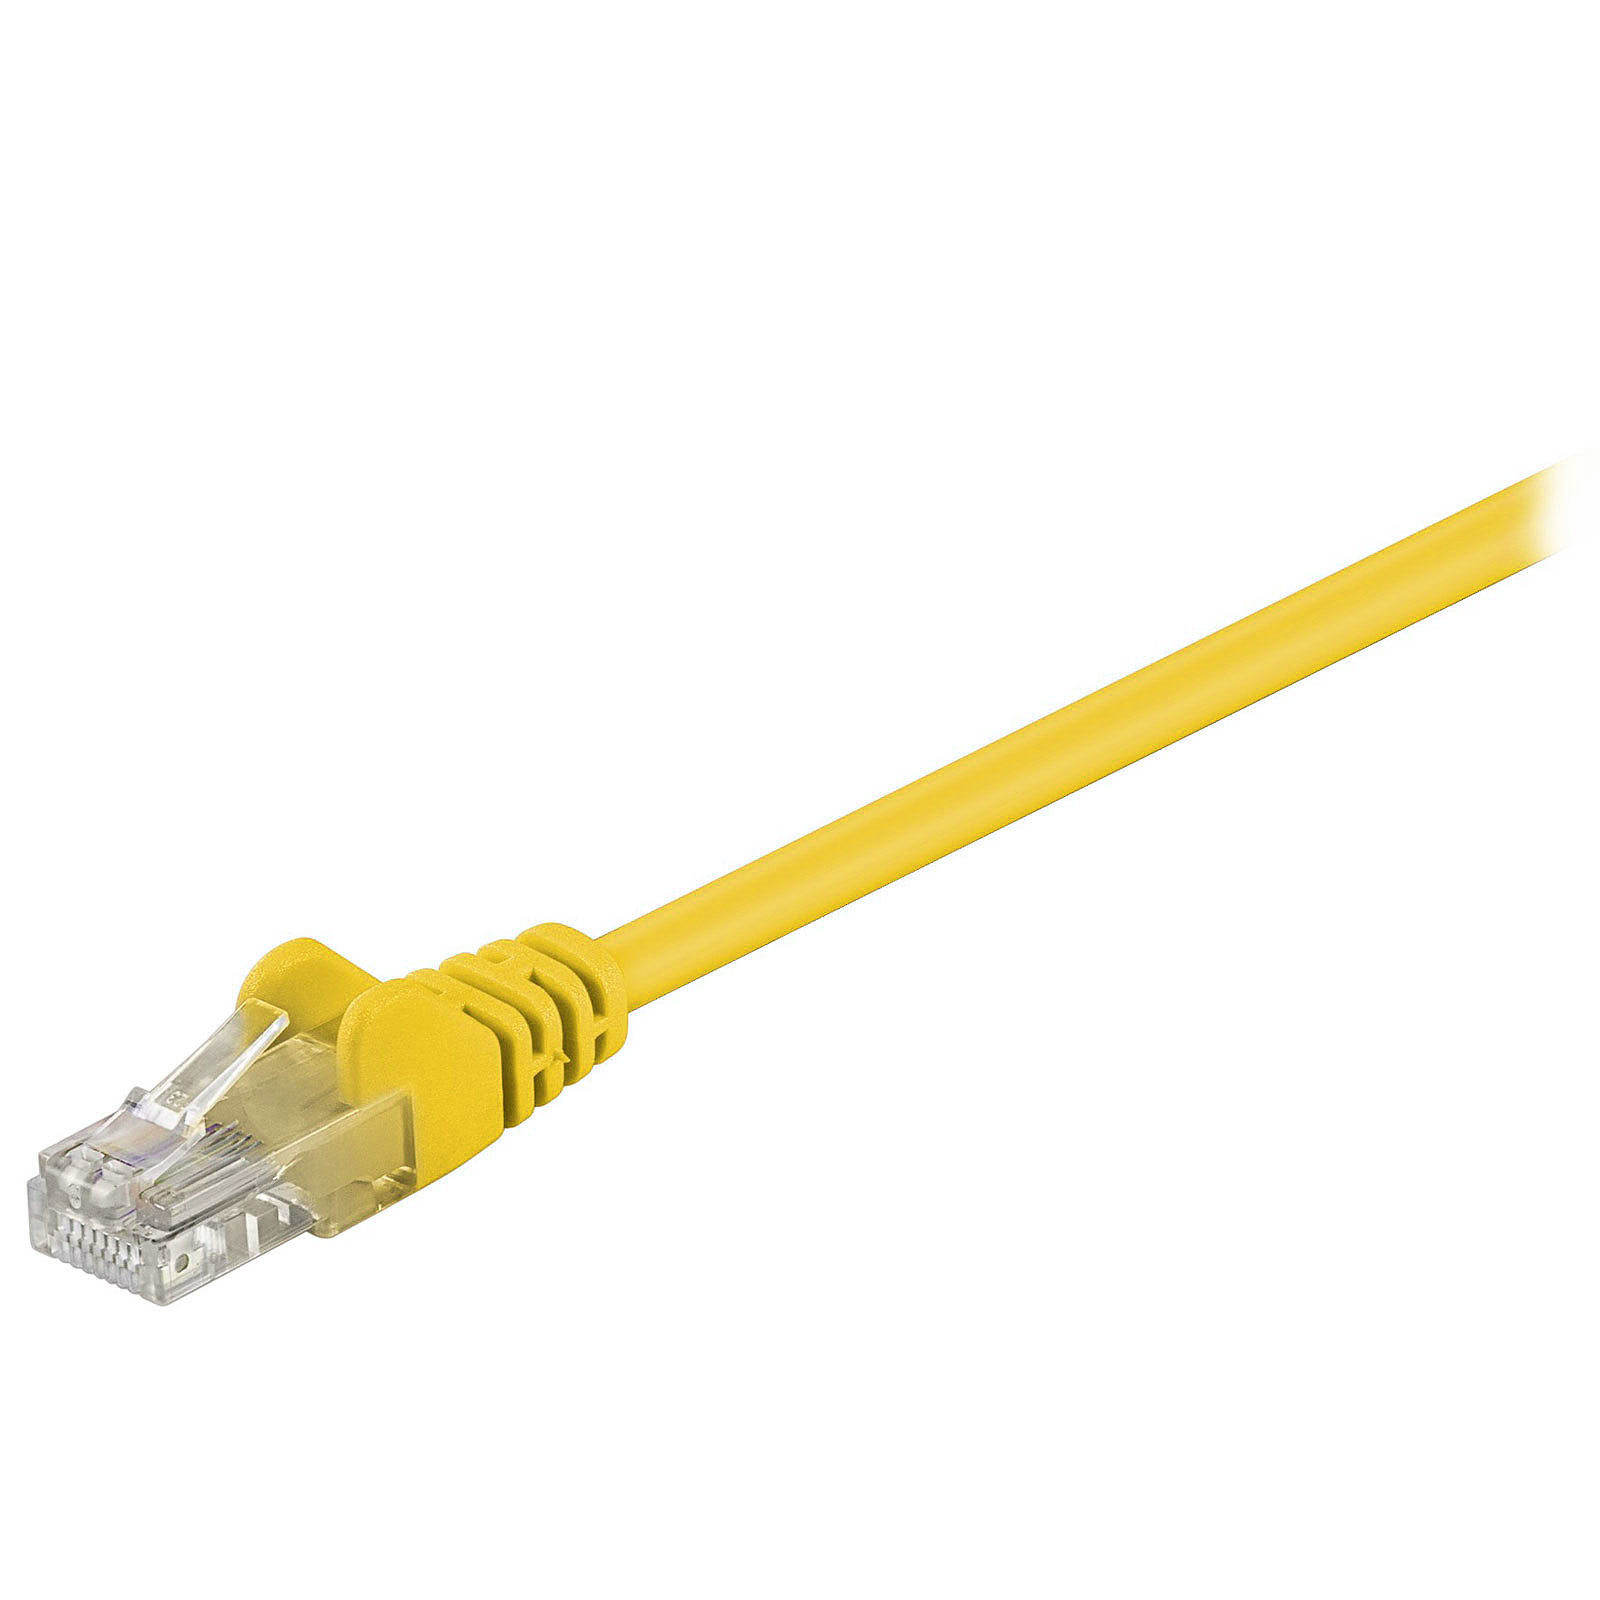 Cable RJ45 categorie 5e U/UTP 3 m (Jaune) - Cable RJ45 Generique